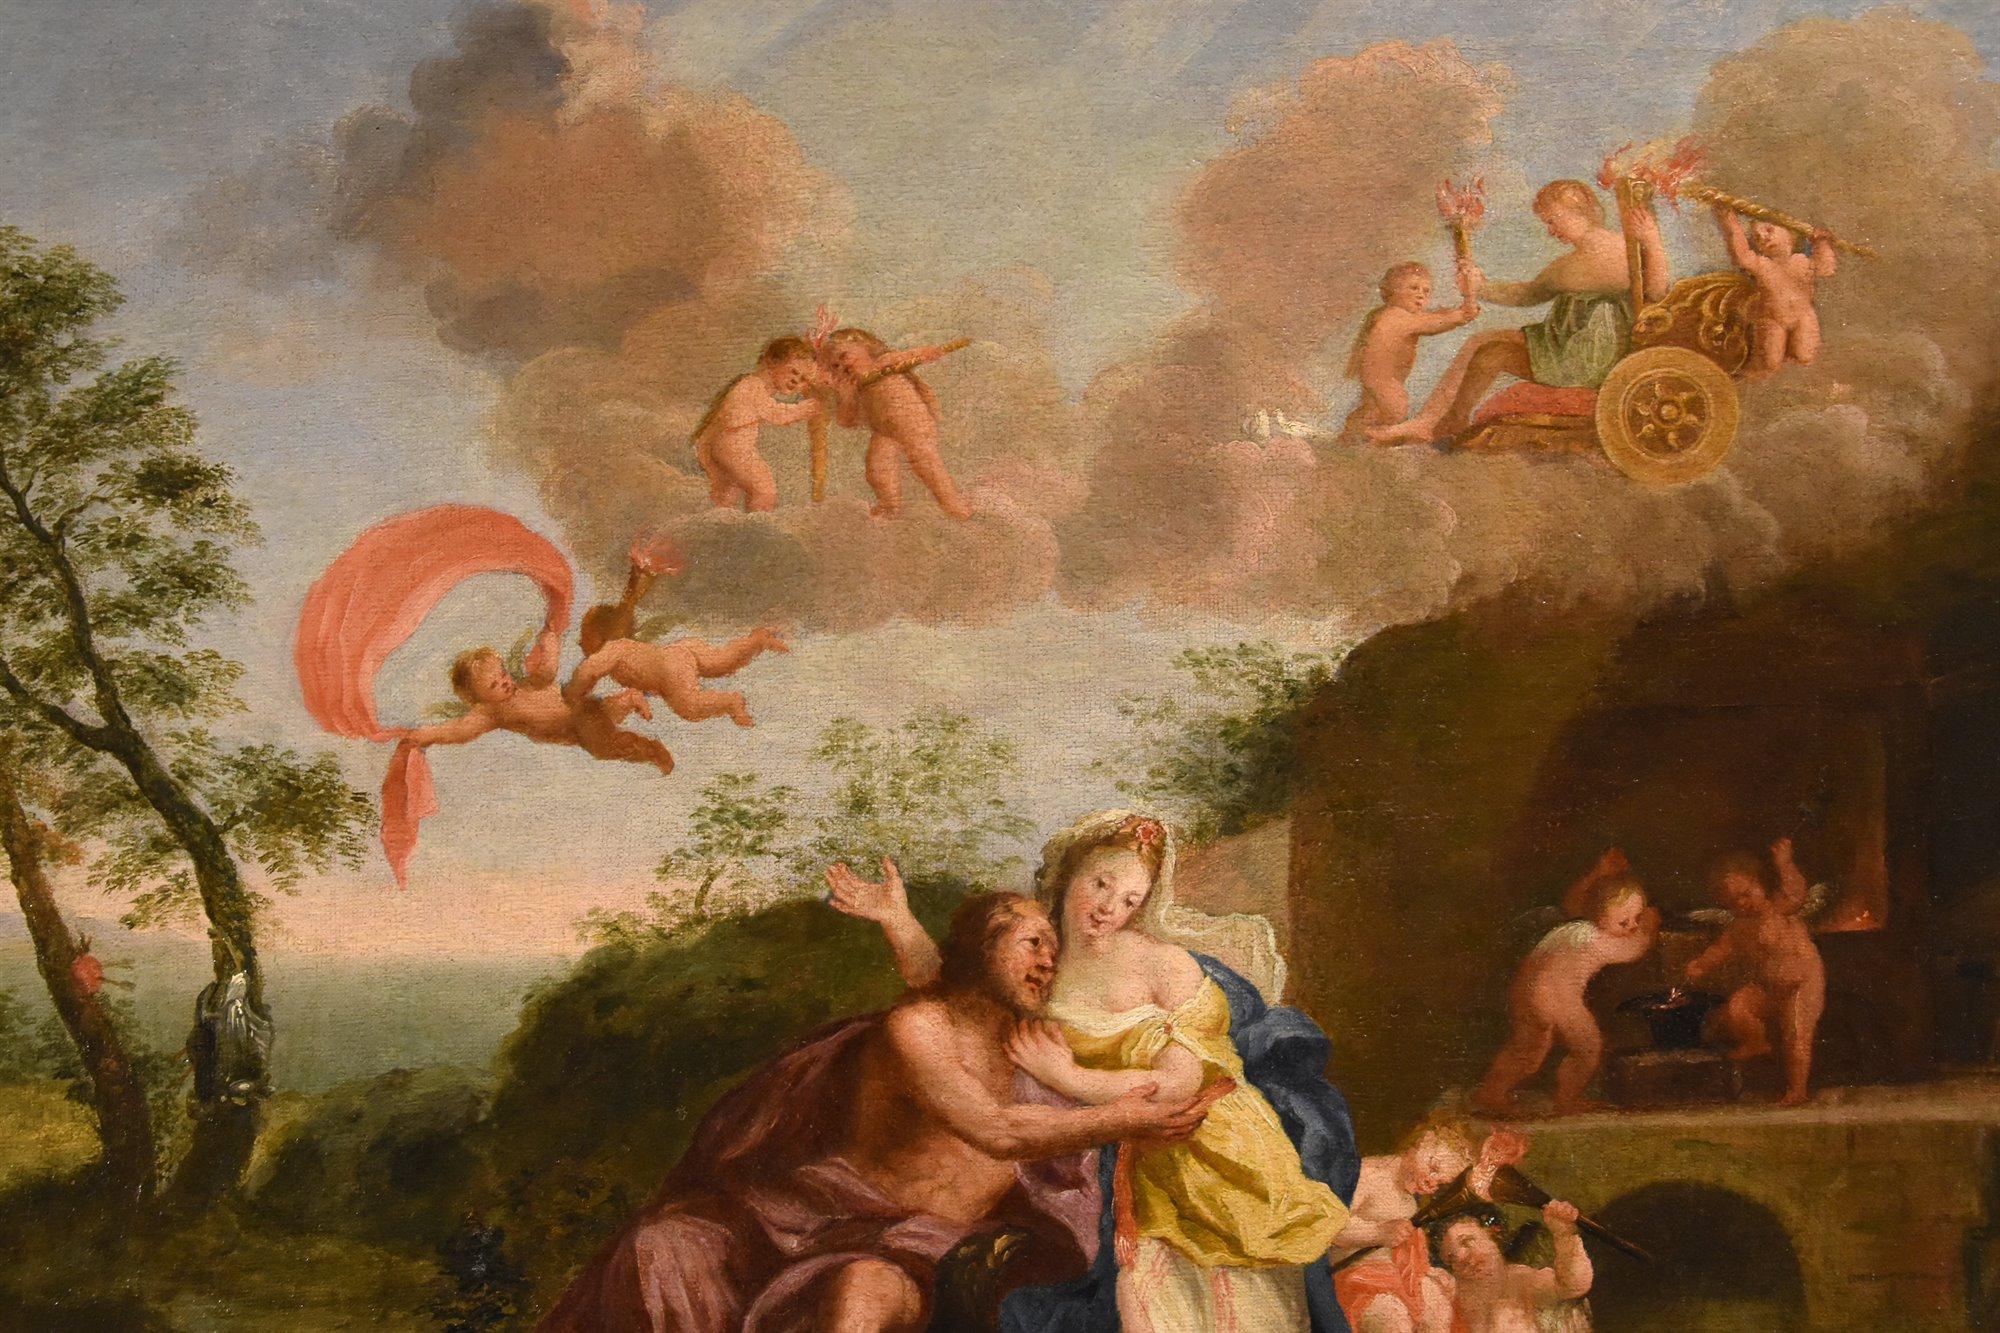 Mars Venus Albani Paint Oil on canvas 17th Century Old master Mythological For Sale 7